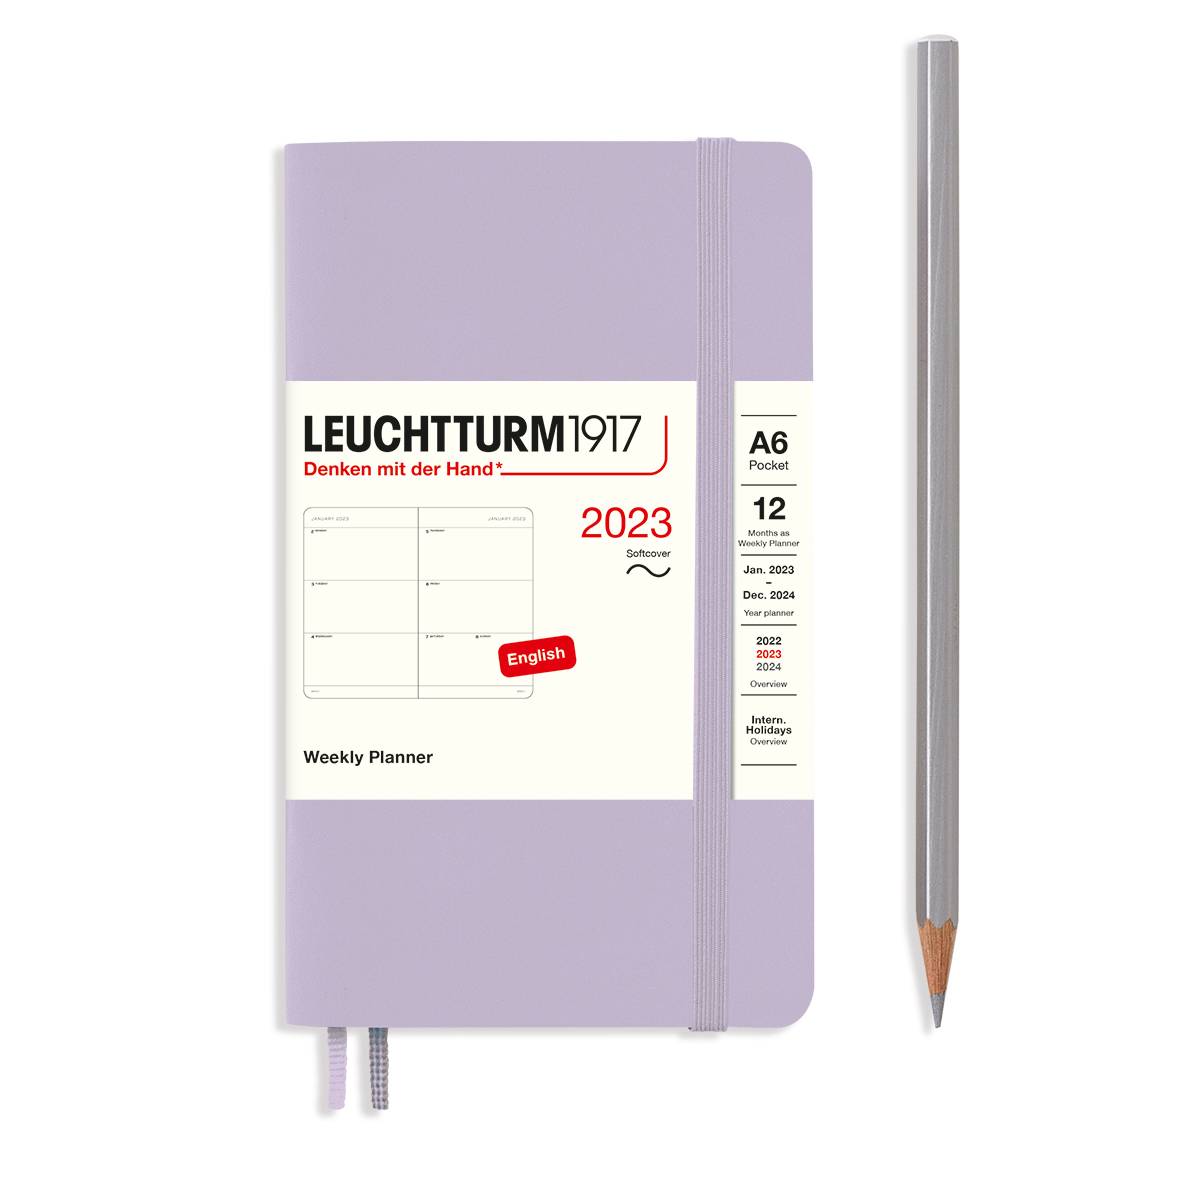 Еженедельник датир. Leuchtturm1917 Pocket A6 на 2023г, дни без расписания, м. обл, цвет: Сиреневый Lecht-365973